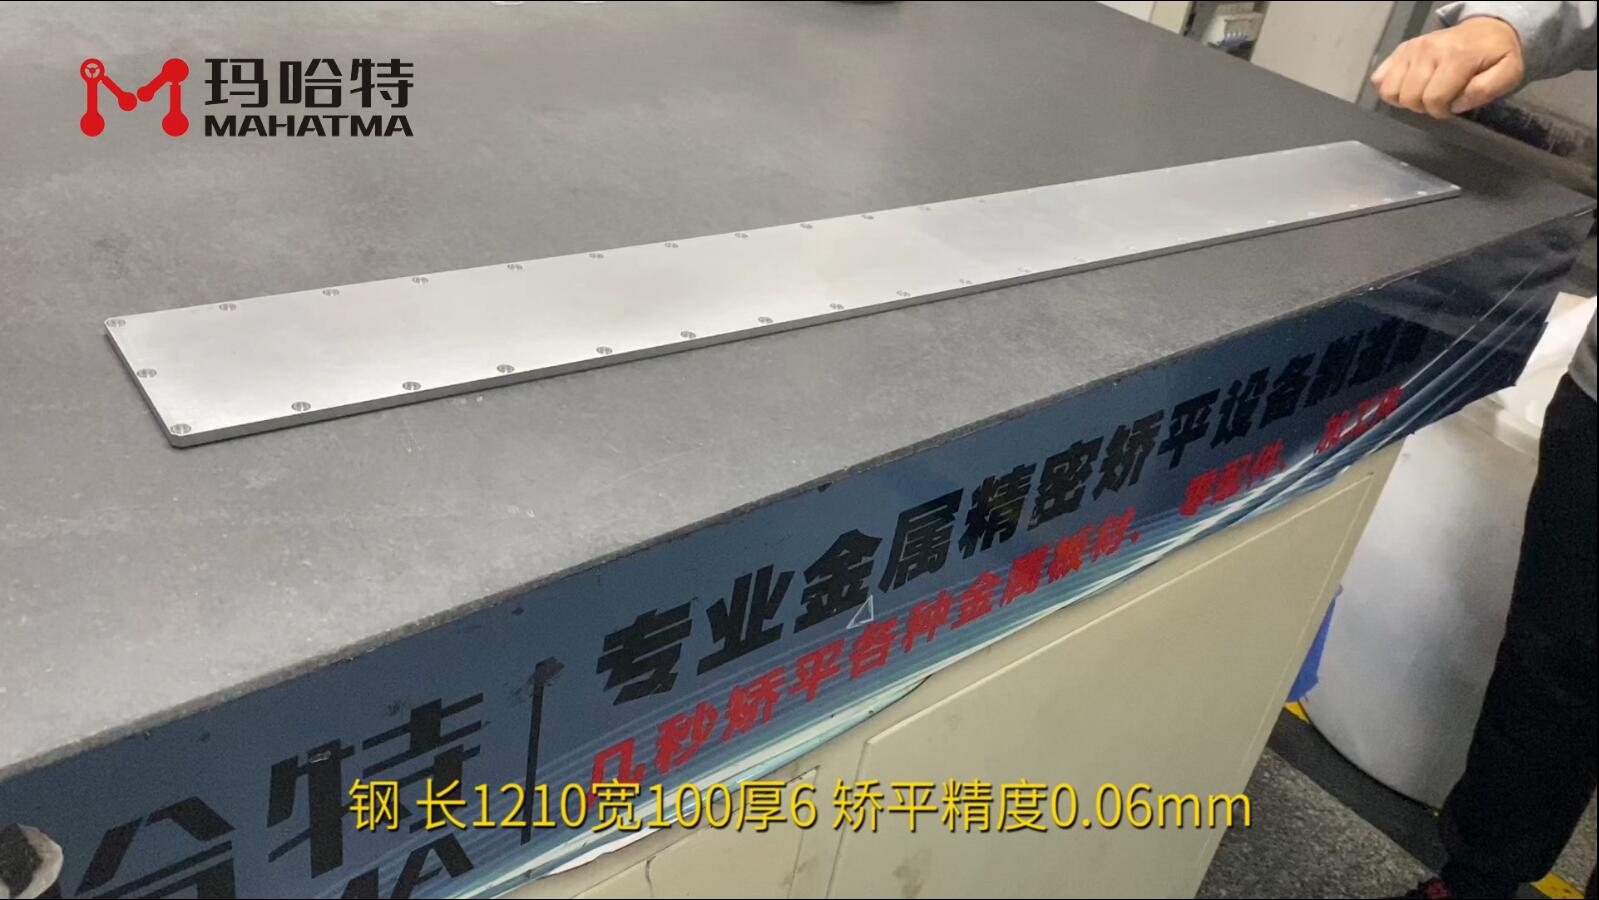 钢 MHT120-1300 长方形 长1210宽100厚6 矫平精度0.06mm